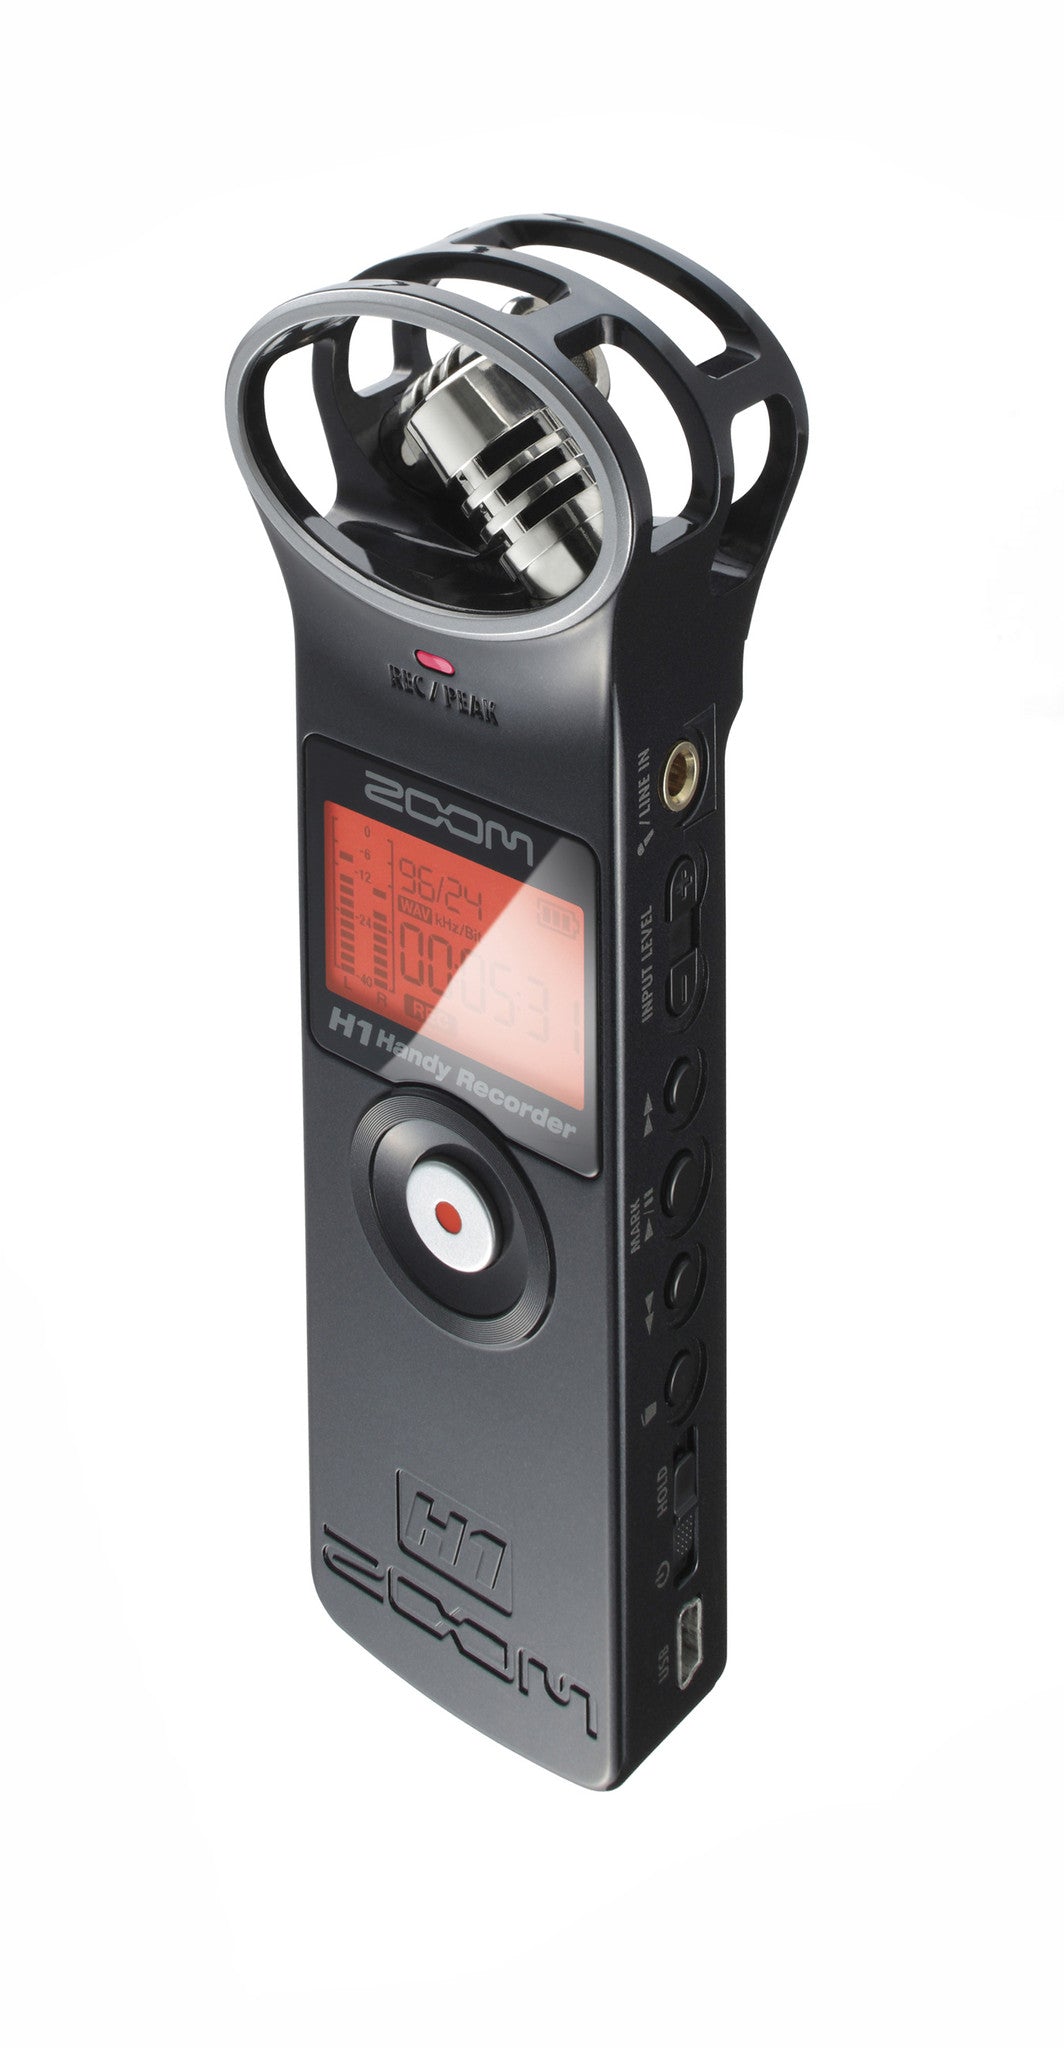 Zoom H1 Handy Recorder, video audio microphones & recorders, Zoom - Pictureline 